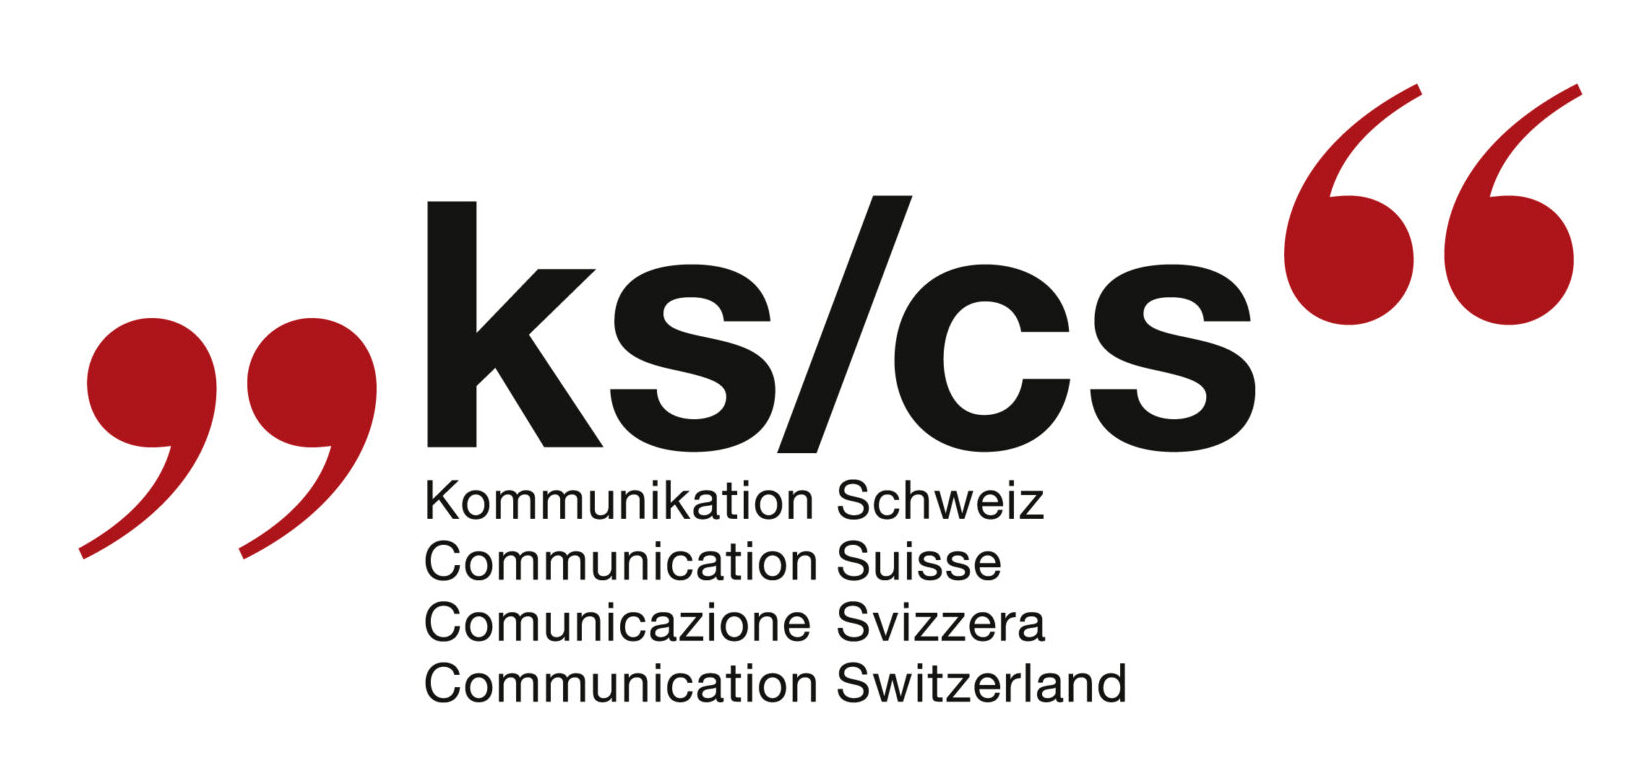 (c) Ks-cs.ch